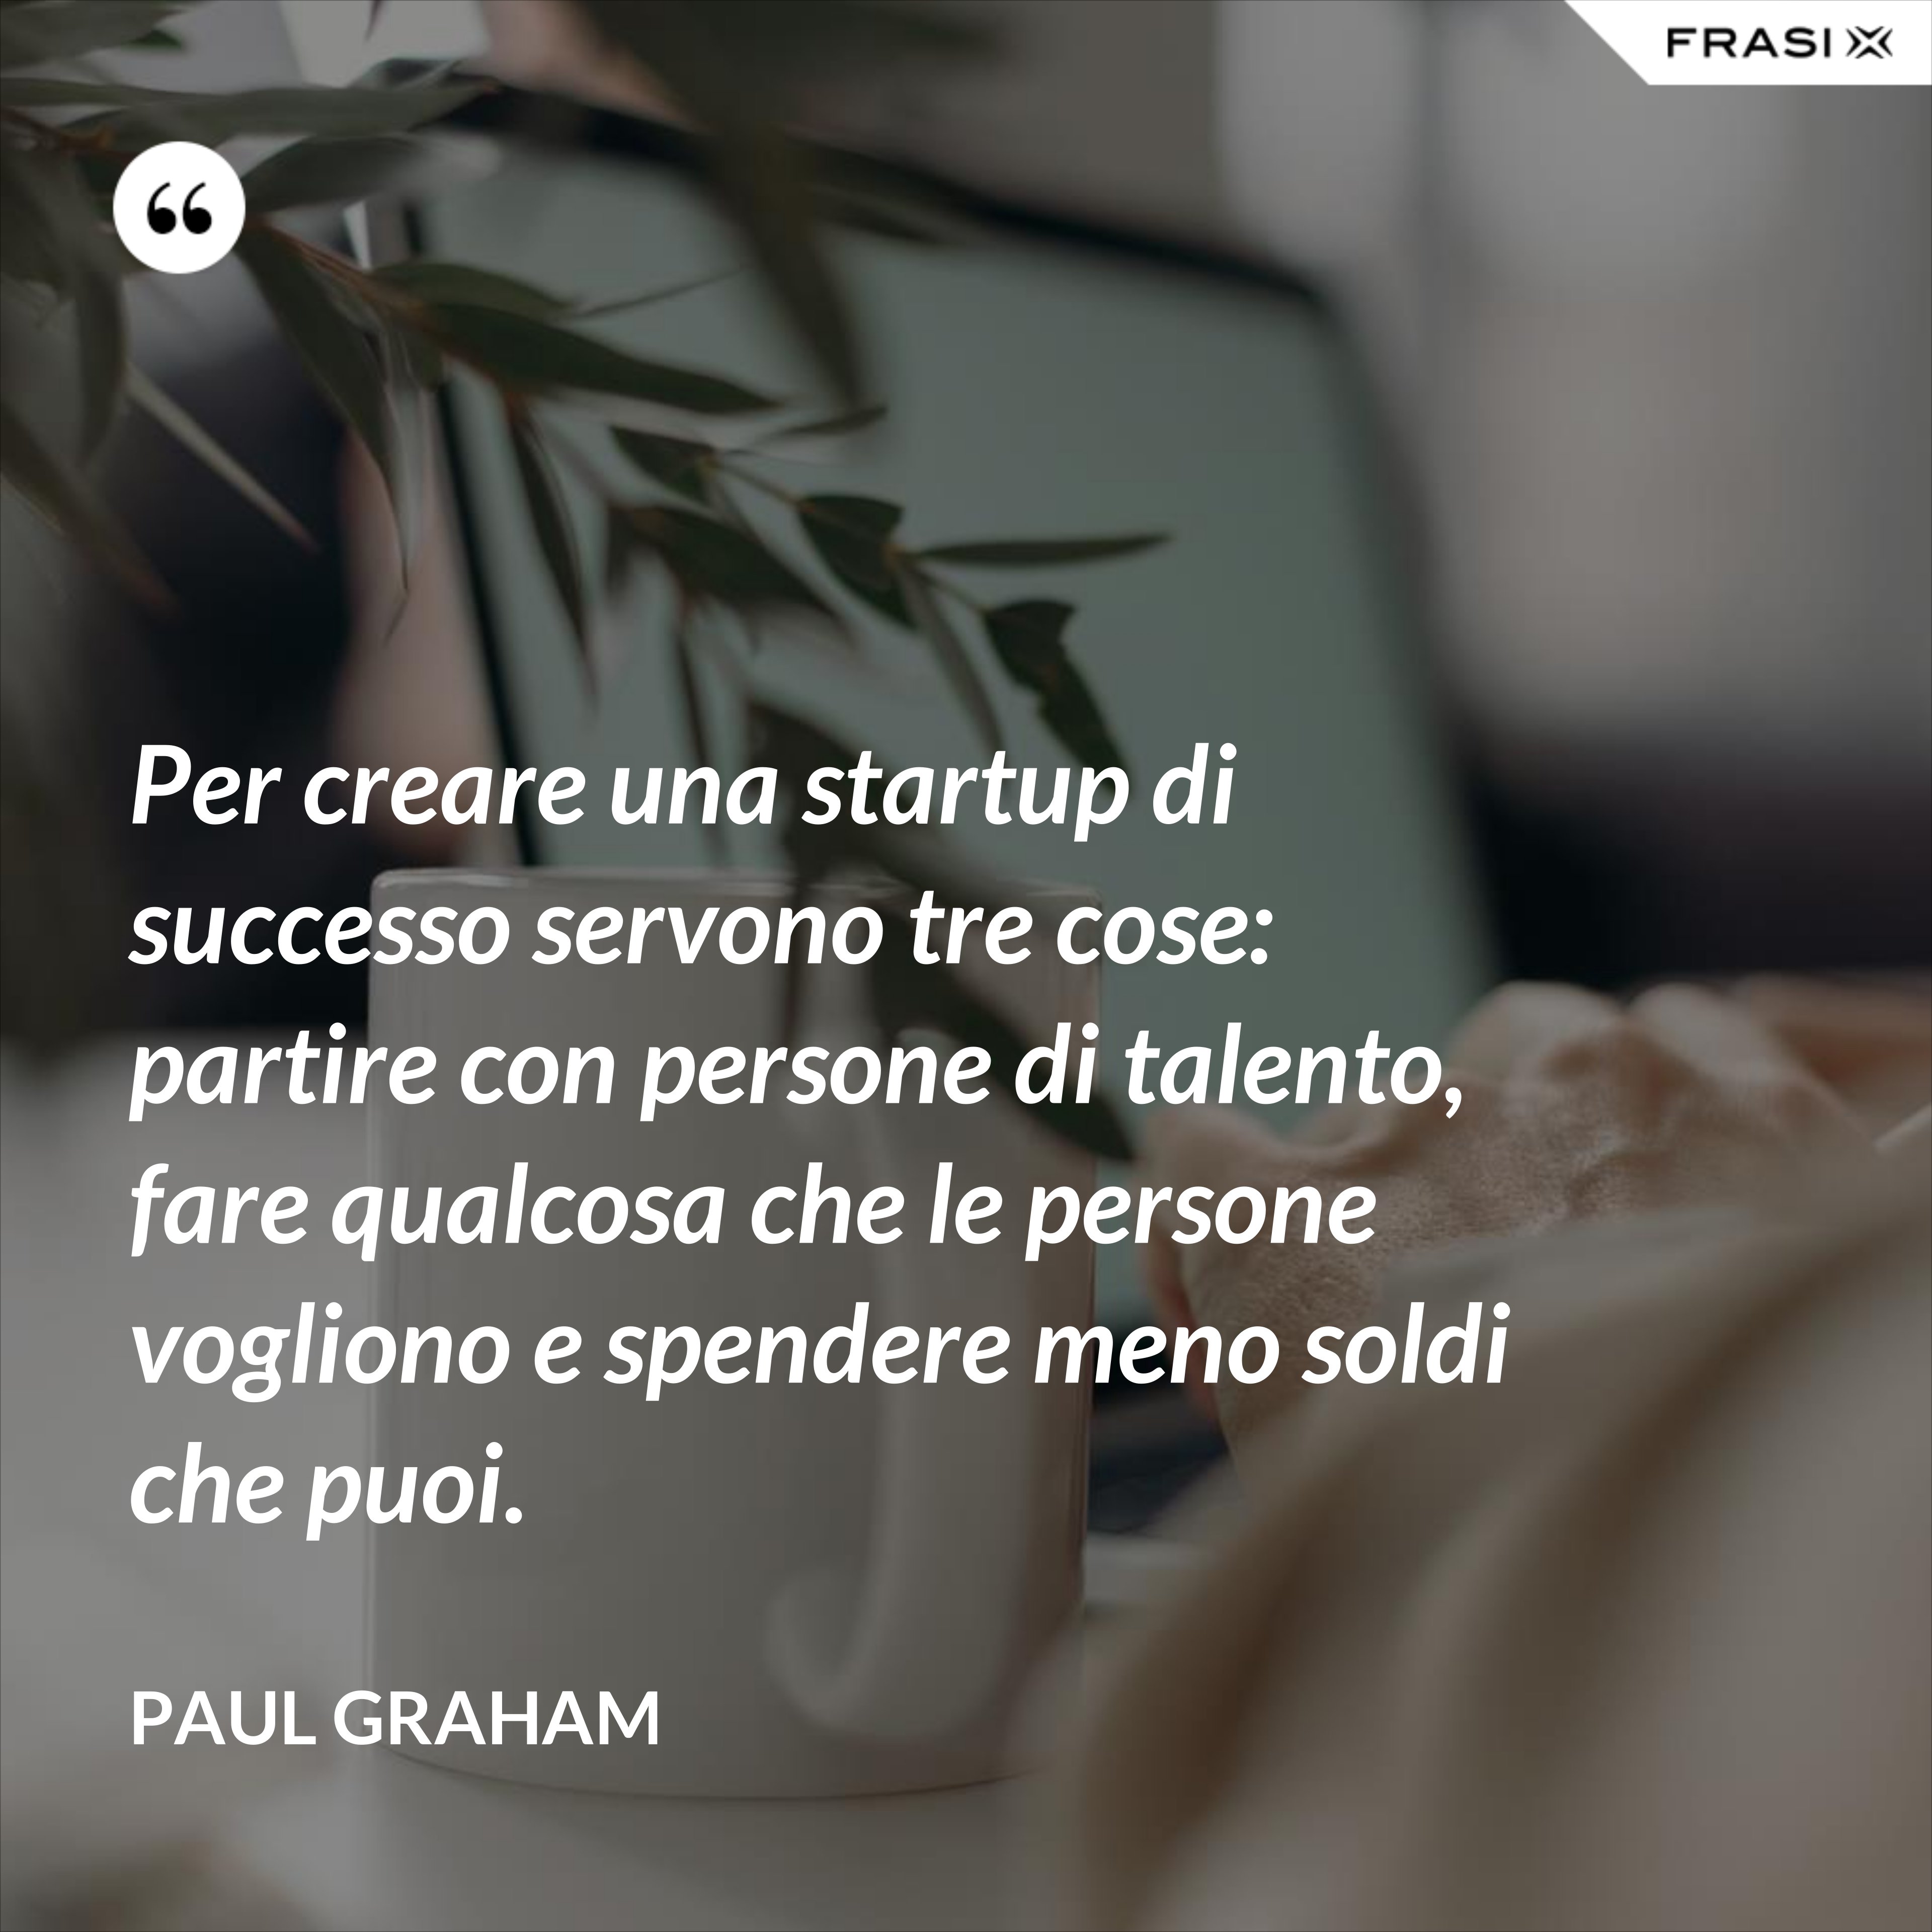 Per creare una startup di successo servono tre cose: partire con persone di talento, fare qualcosa che le persone vogliono e spendere meno soldi che puoi. - Paul Graham